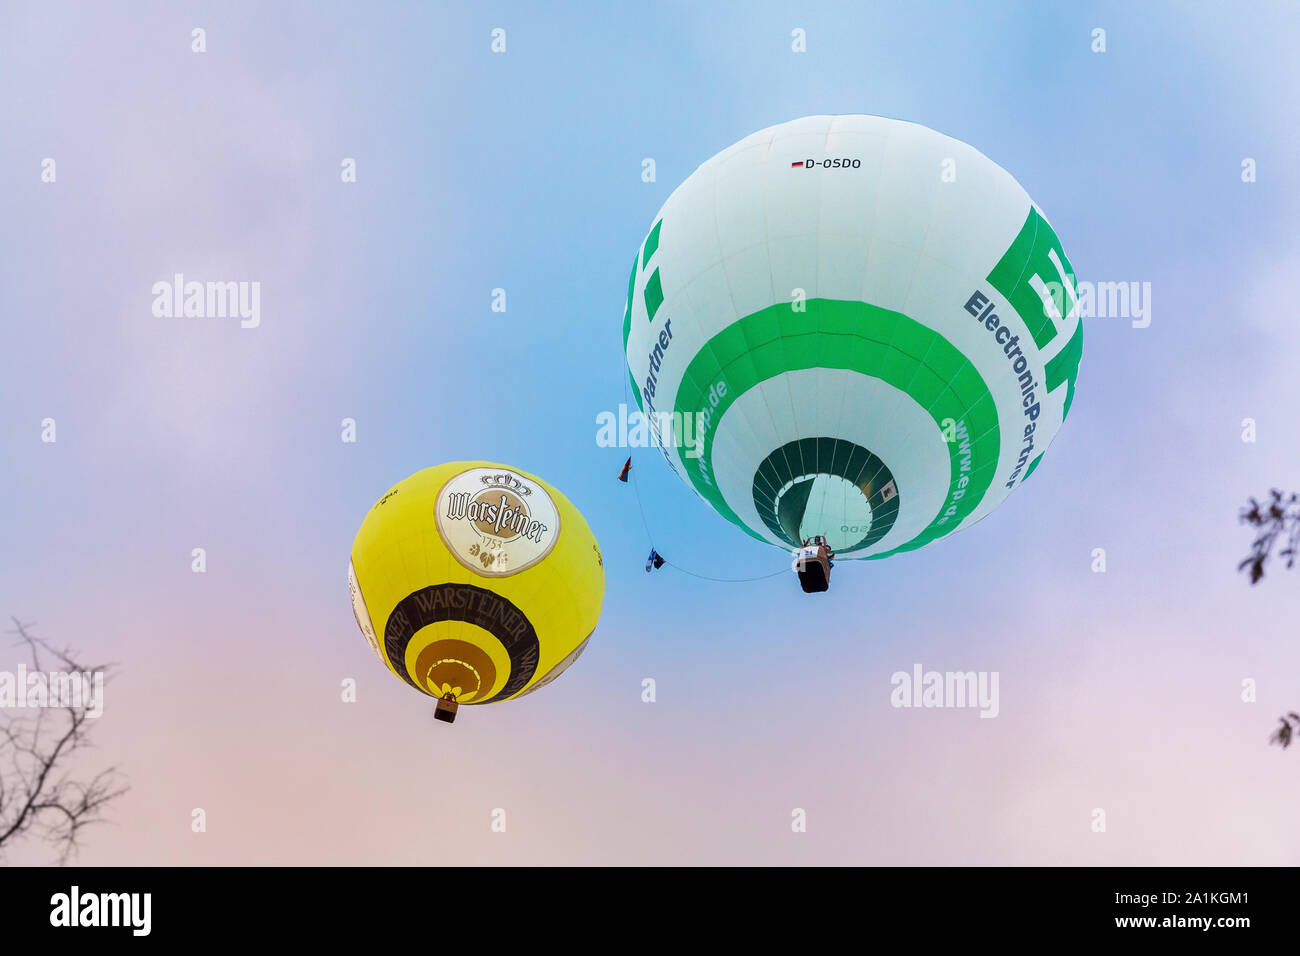 Rüthen, NRW/Deutschland - 2. September 2019: Warsteins internationale montgolfiade ist die Veranstaltung mit Heißluftballons. Zwei verschiedene Ba Stockfoto